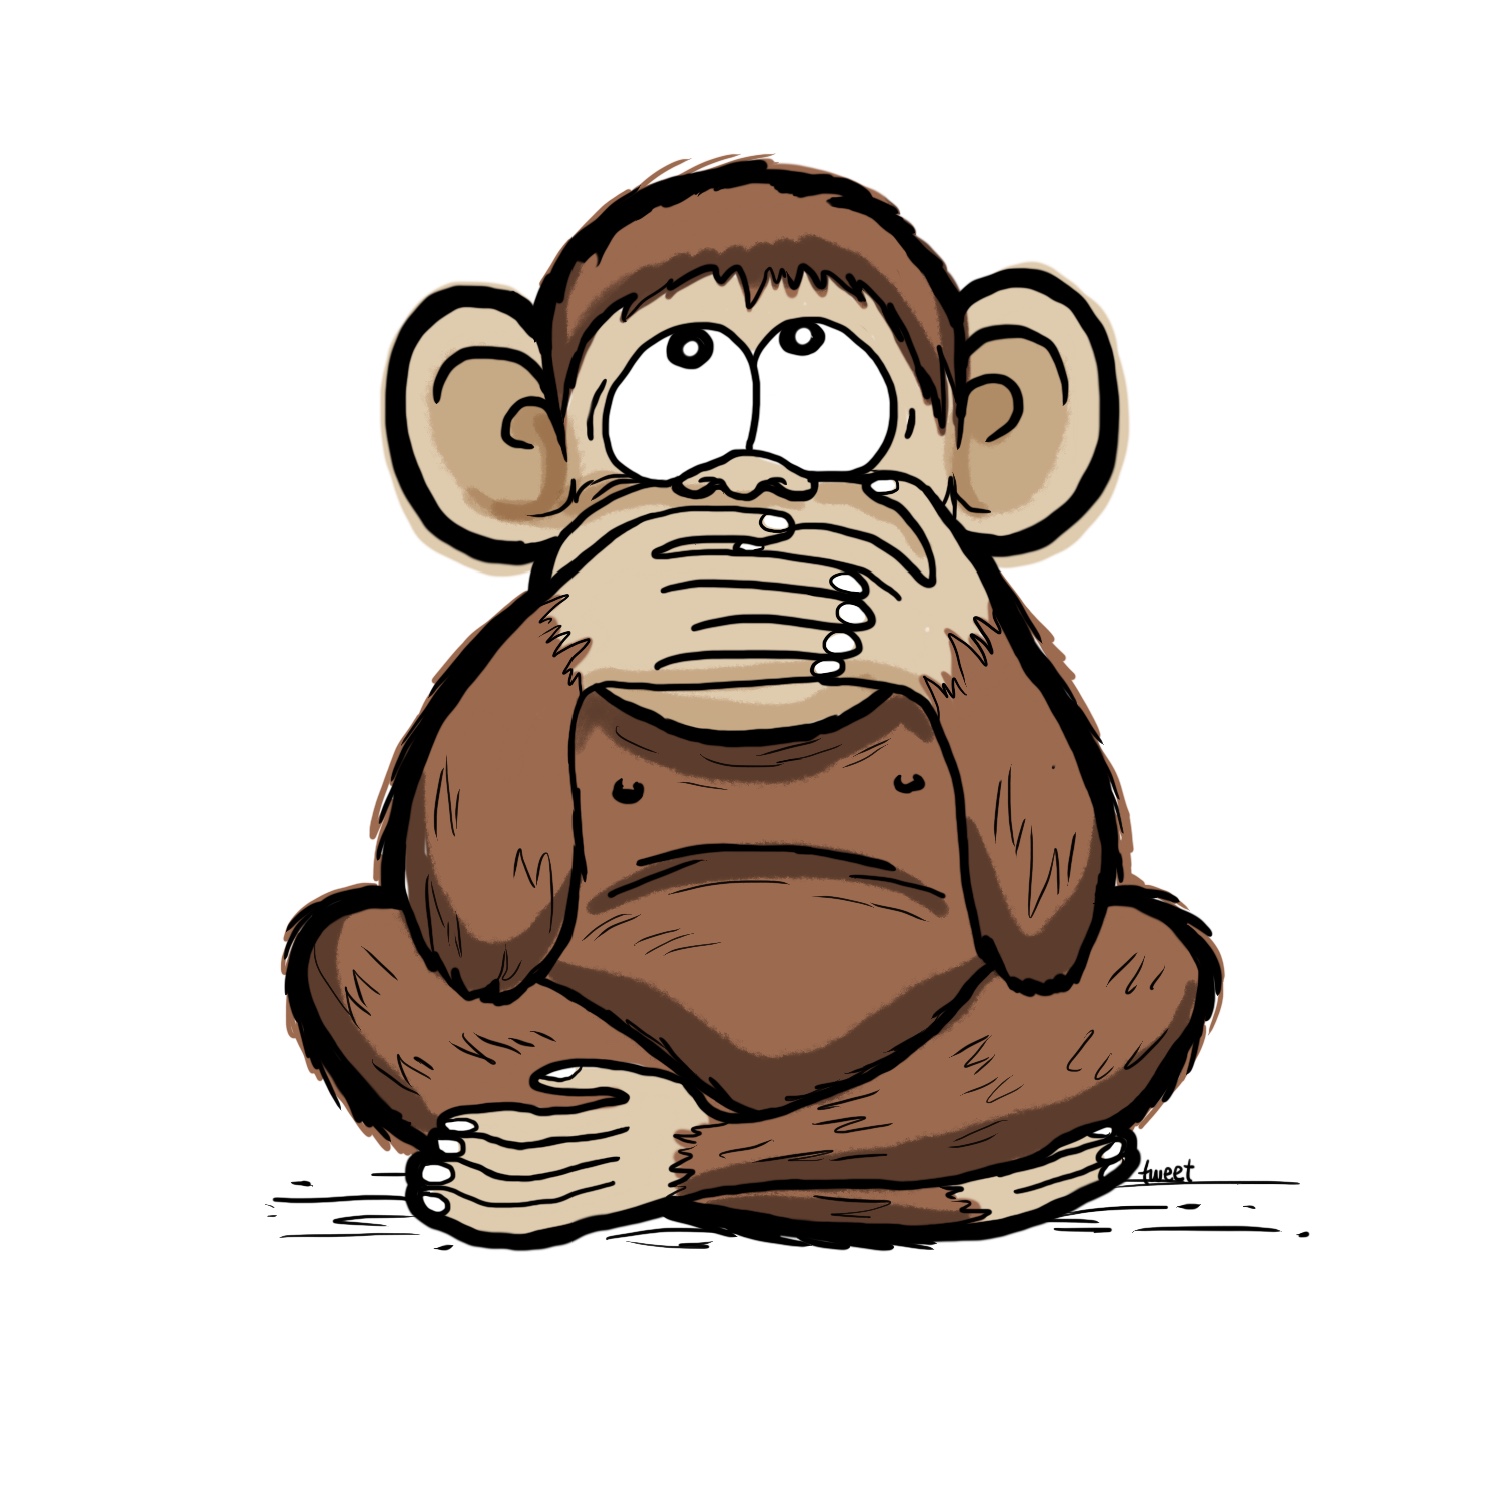 3 wise monkeys - iwazaru